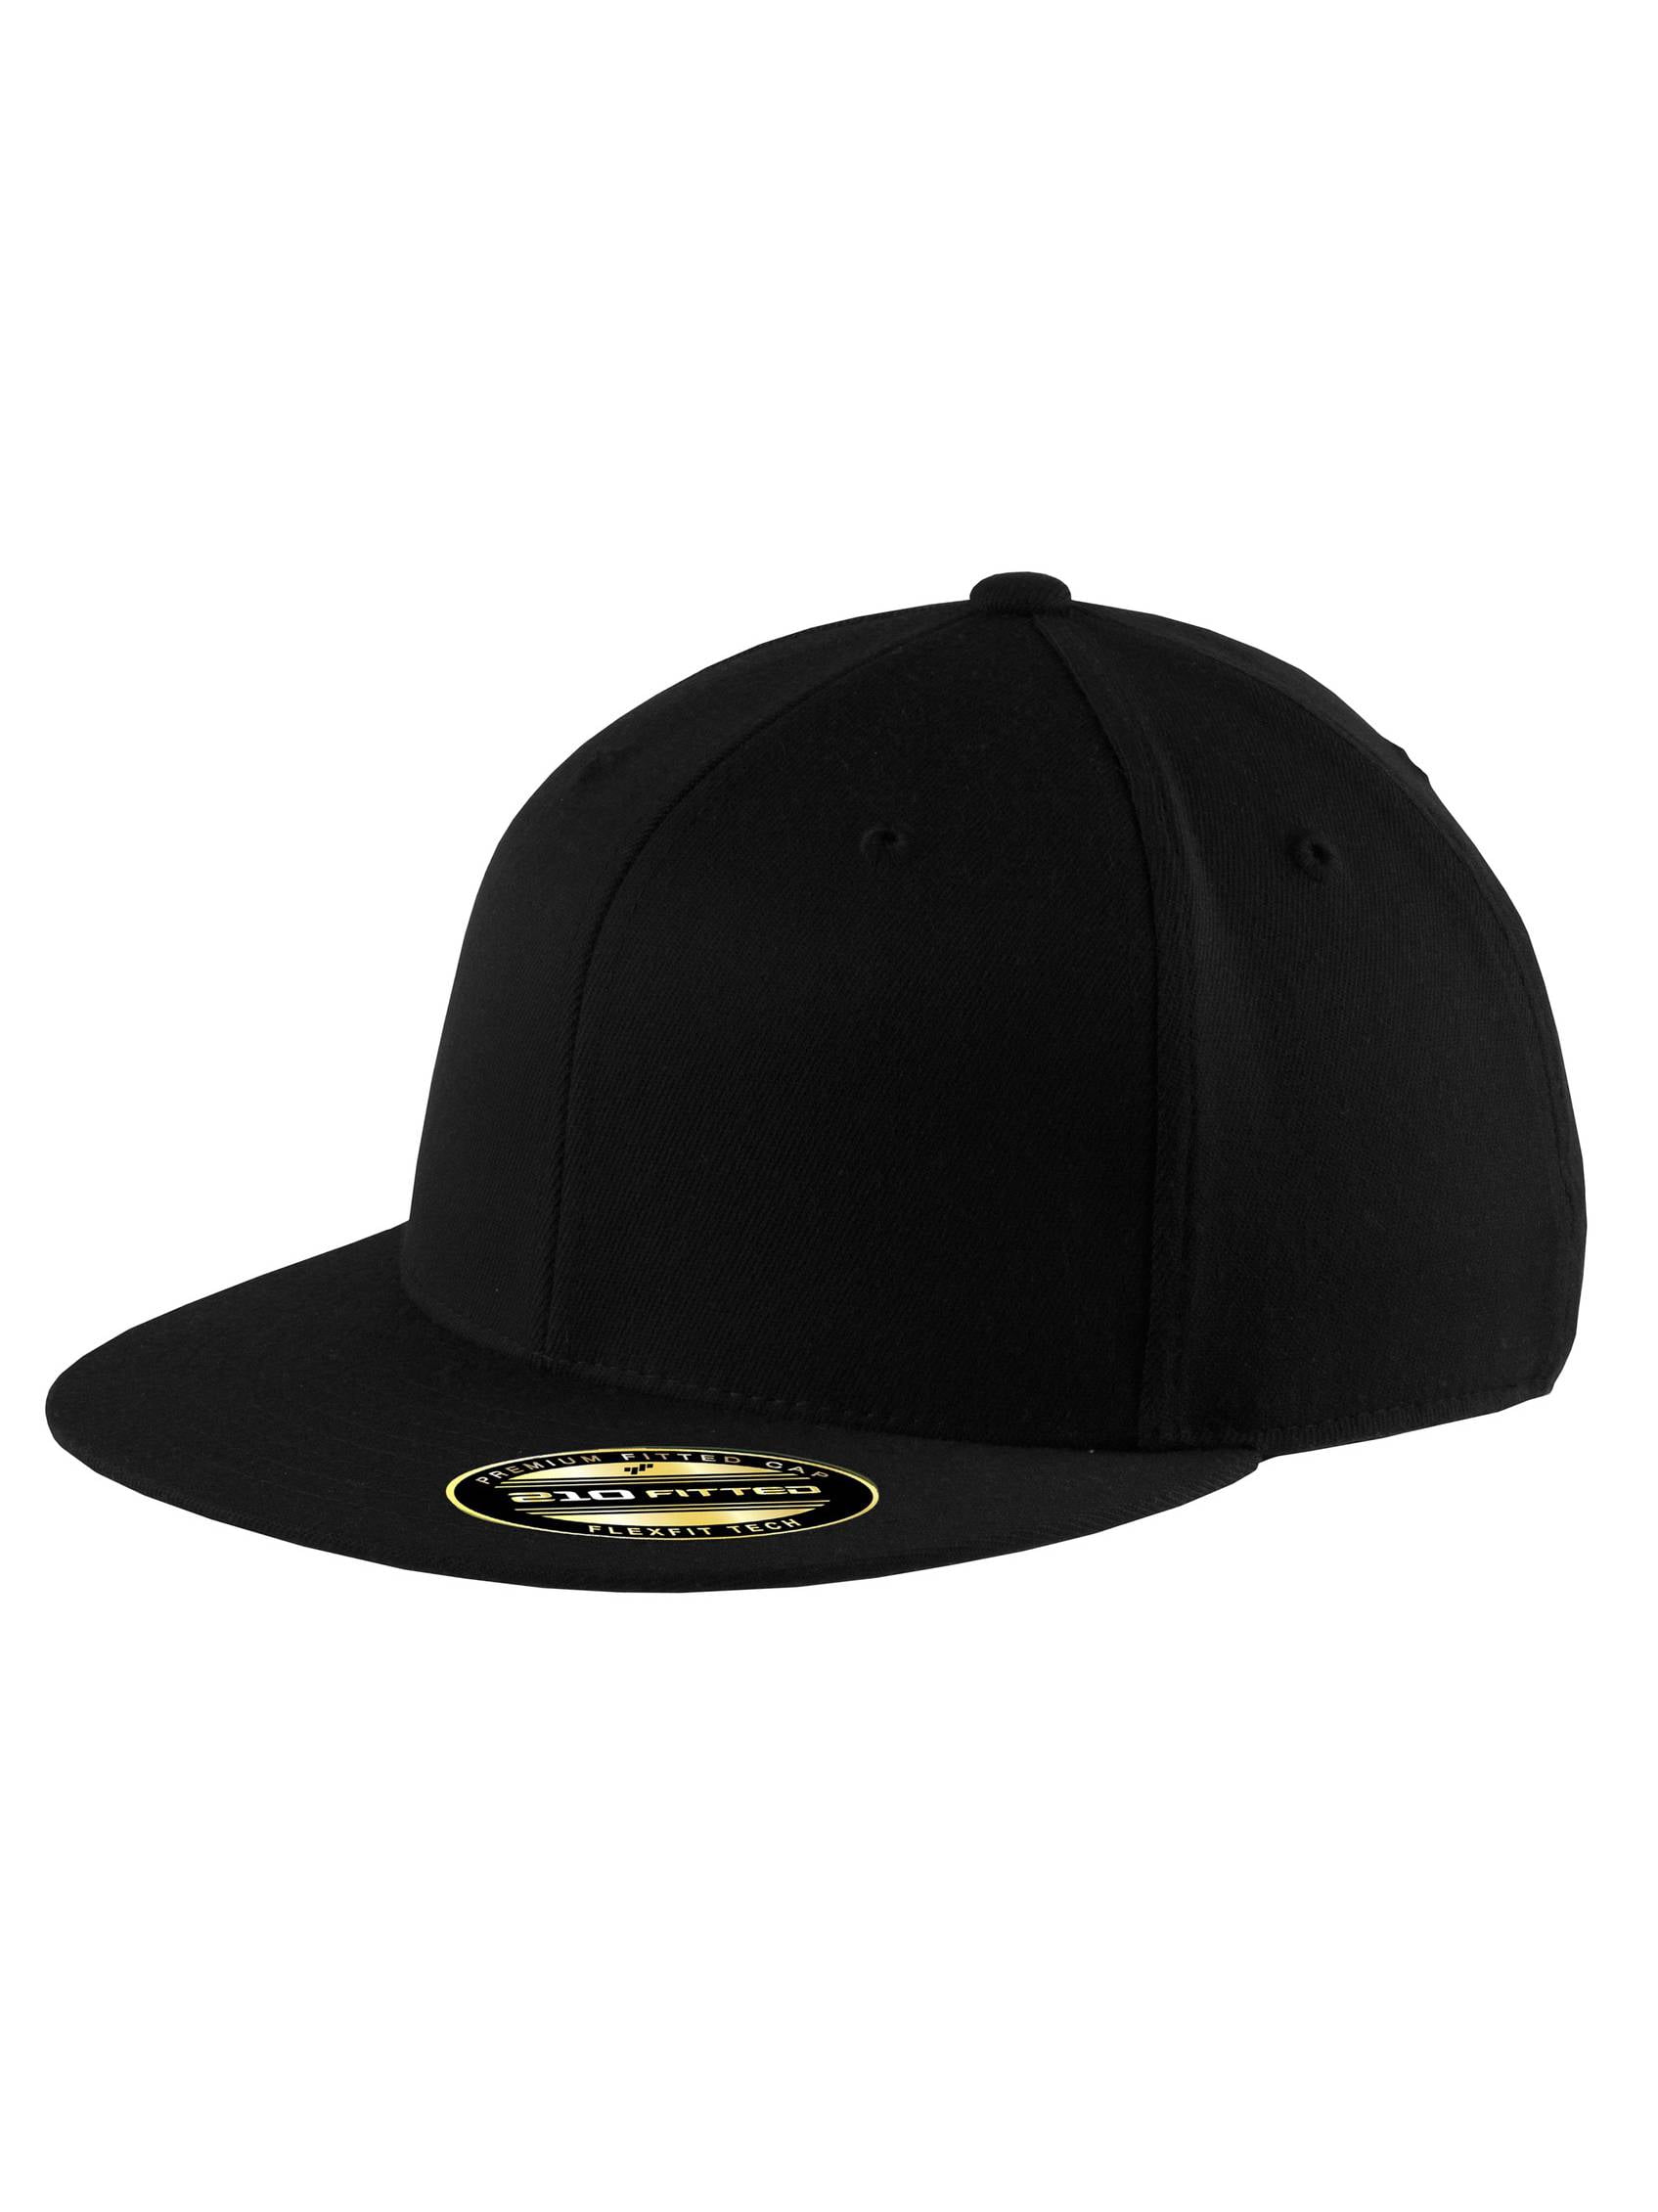 Top Flat - Small/Medium Black - Cap Bill Flexible Headwear